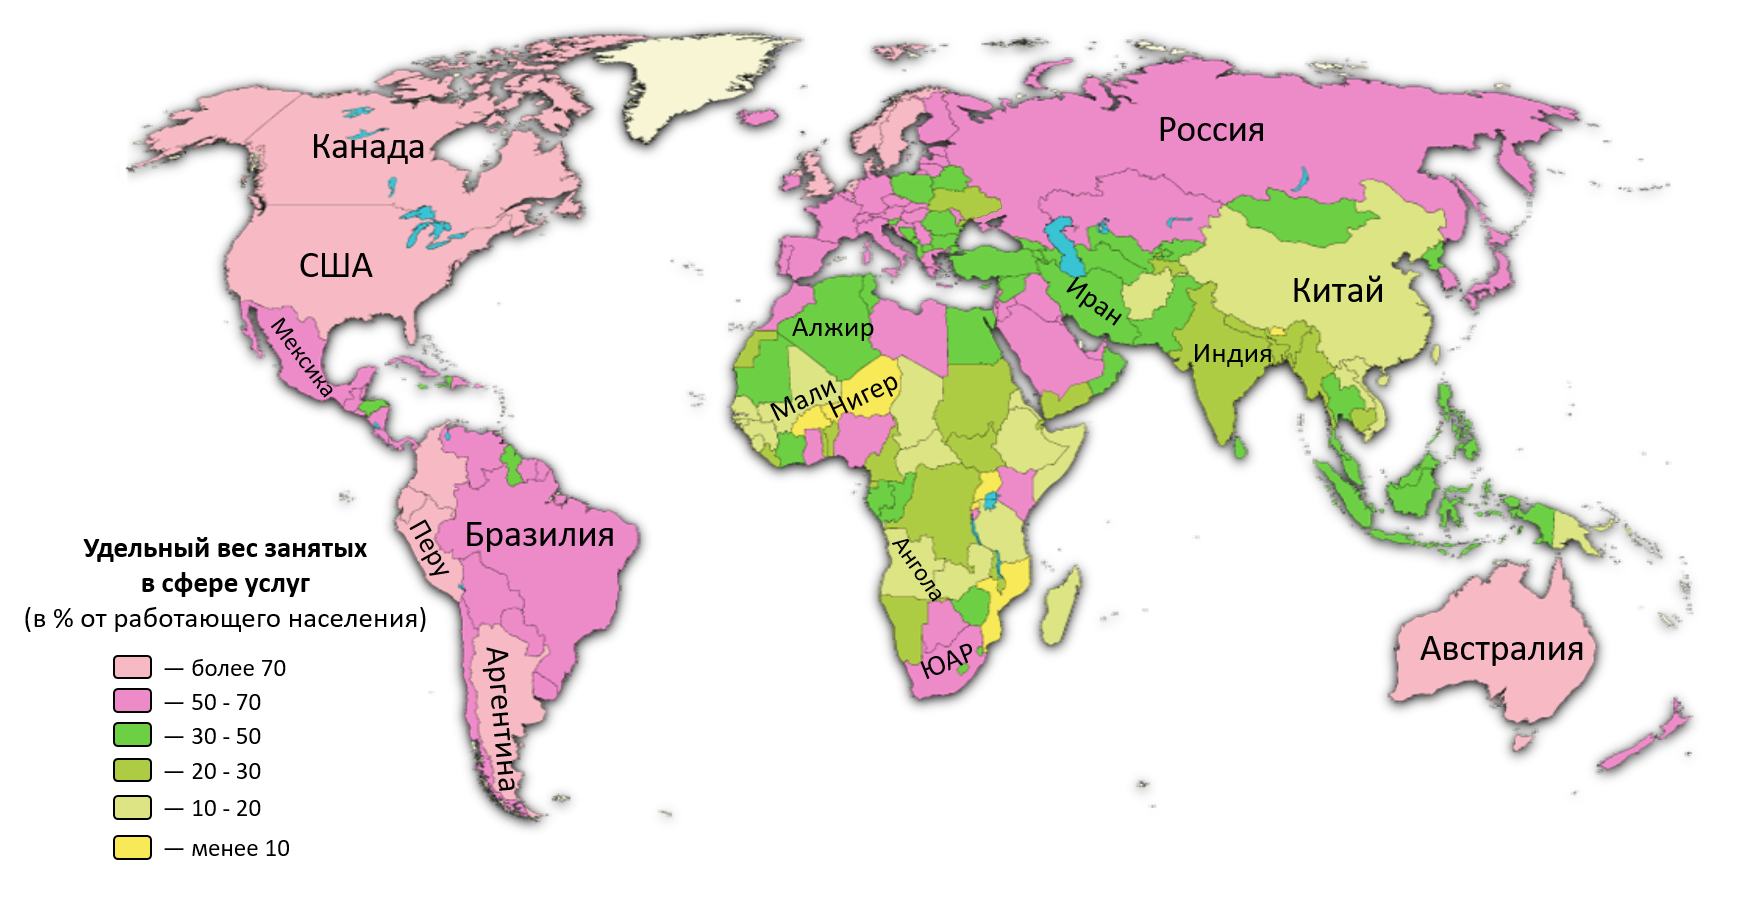 Экономические развитые страны 3. Развитые и развивающиеся страны карта. Карта развитых стран. Развивающиеся страны на карте.